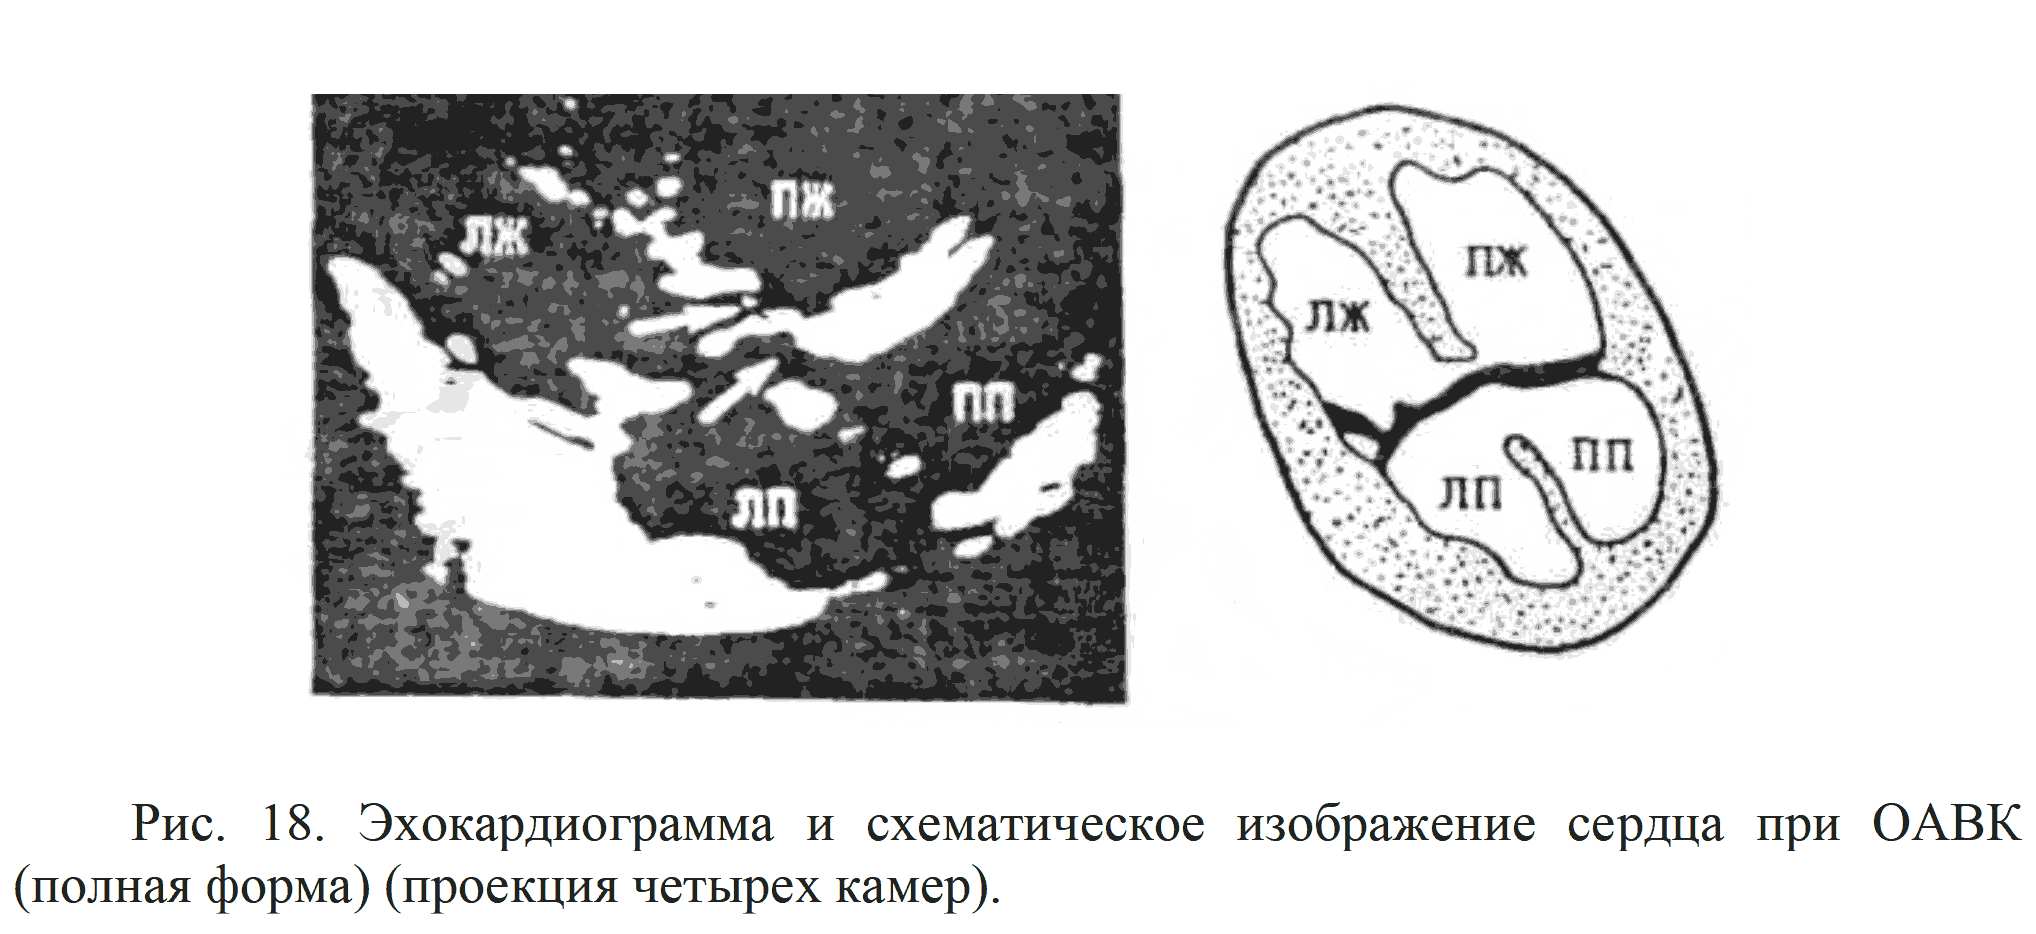 Рис. 18. Эхокардиограмма и схематическое изображение сердца при ОАВК (полная форма) (проекция четырех камер).